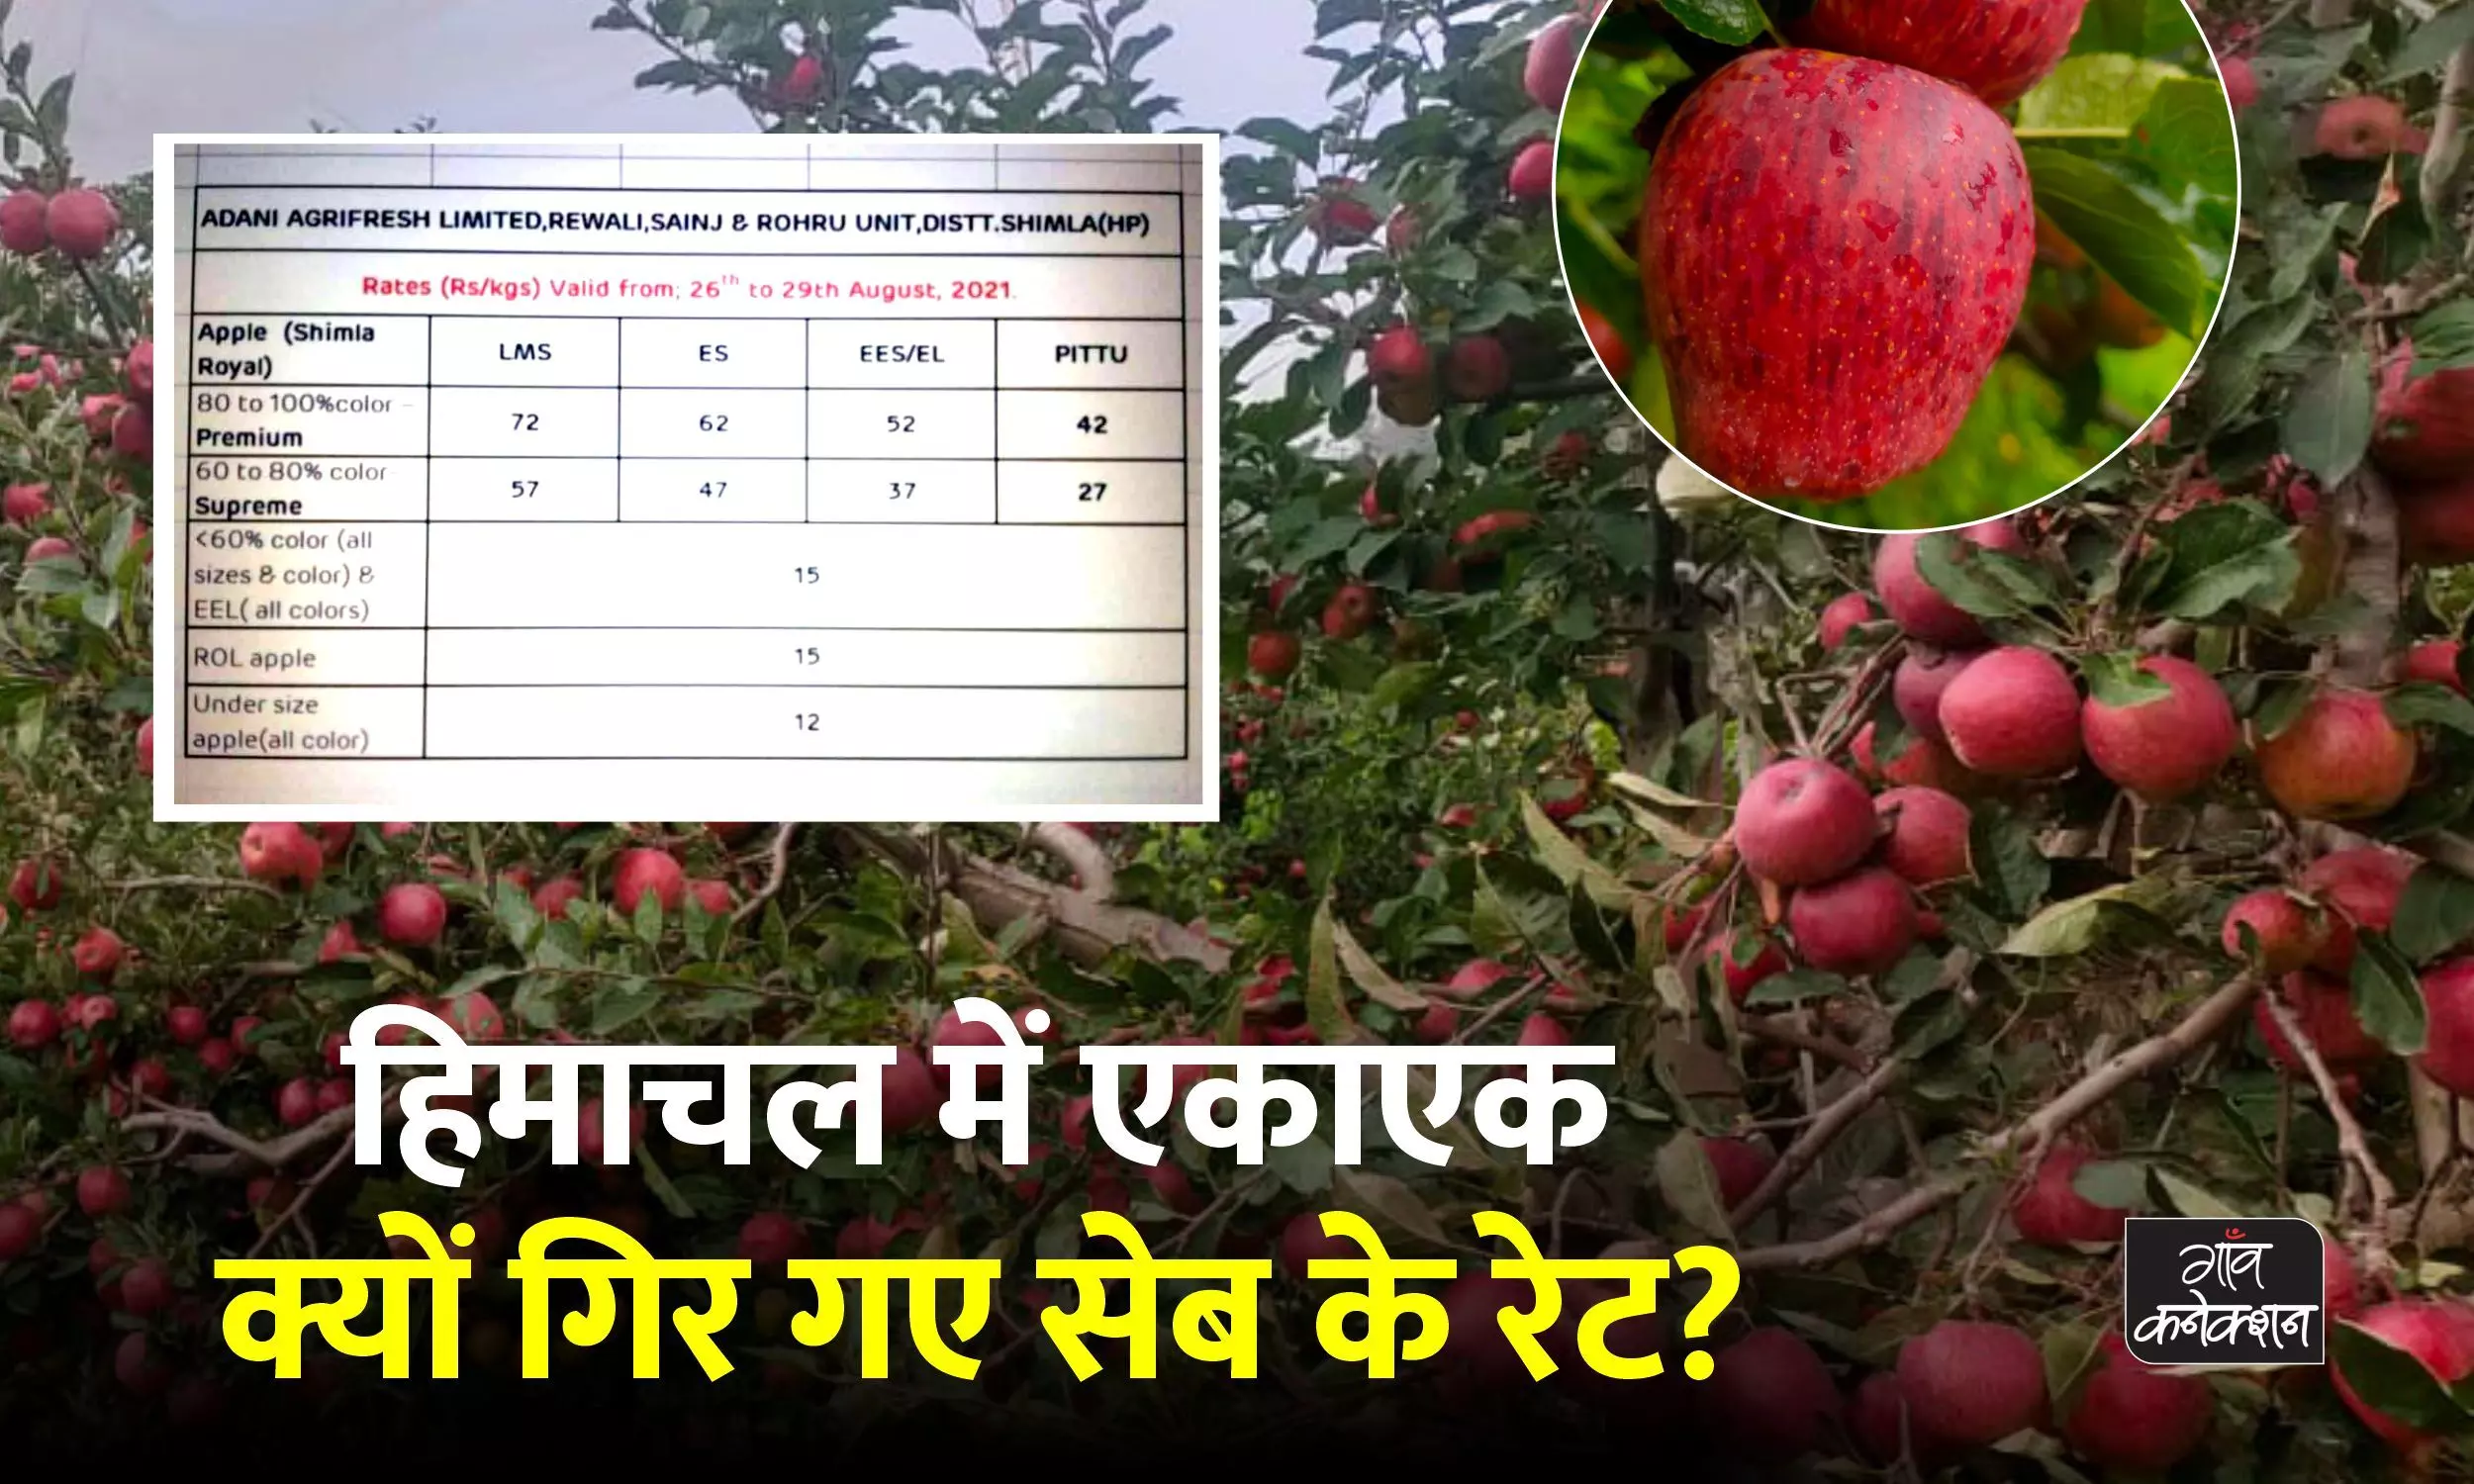 हिमाचल प्रदेश: अदानी ने 16 रुपए किलो घटाए सेब के दाम तो थोक मंडी में गिरे रेट, किसान परेशान